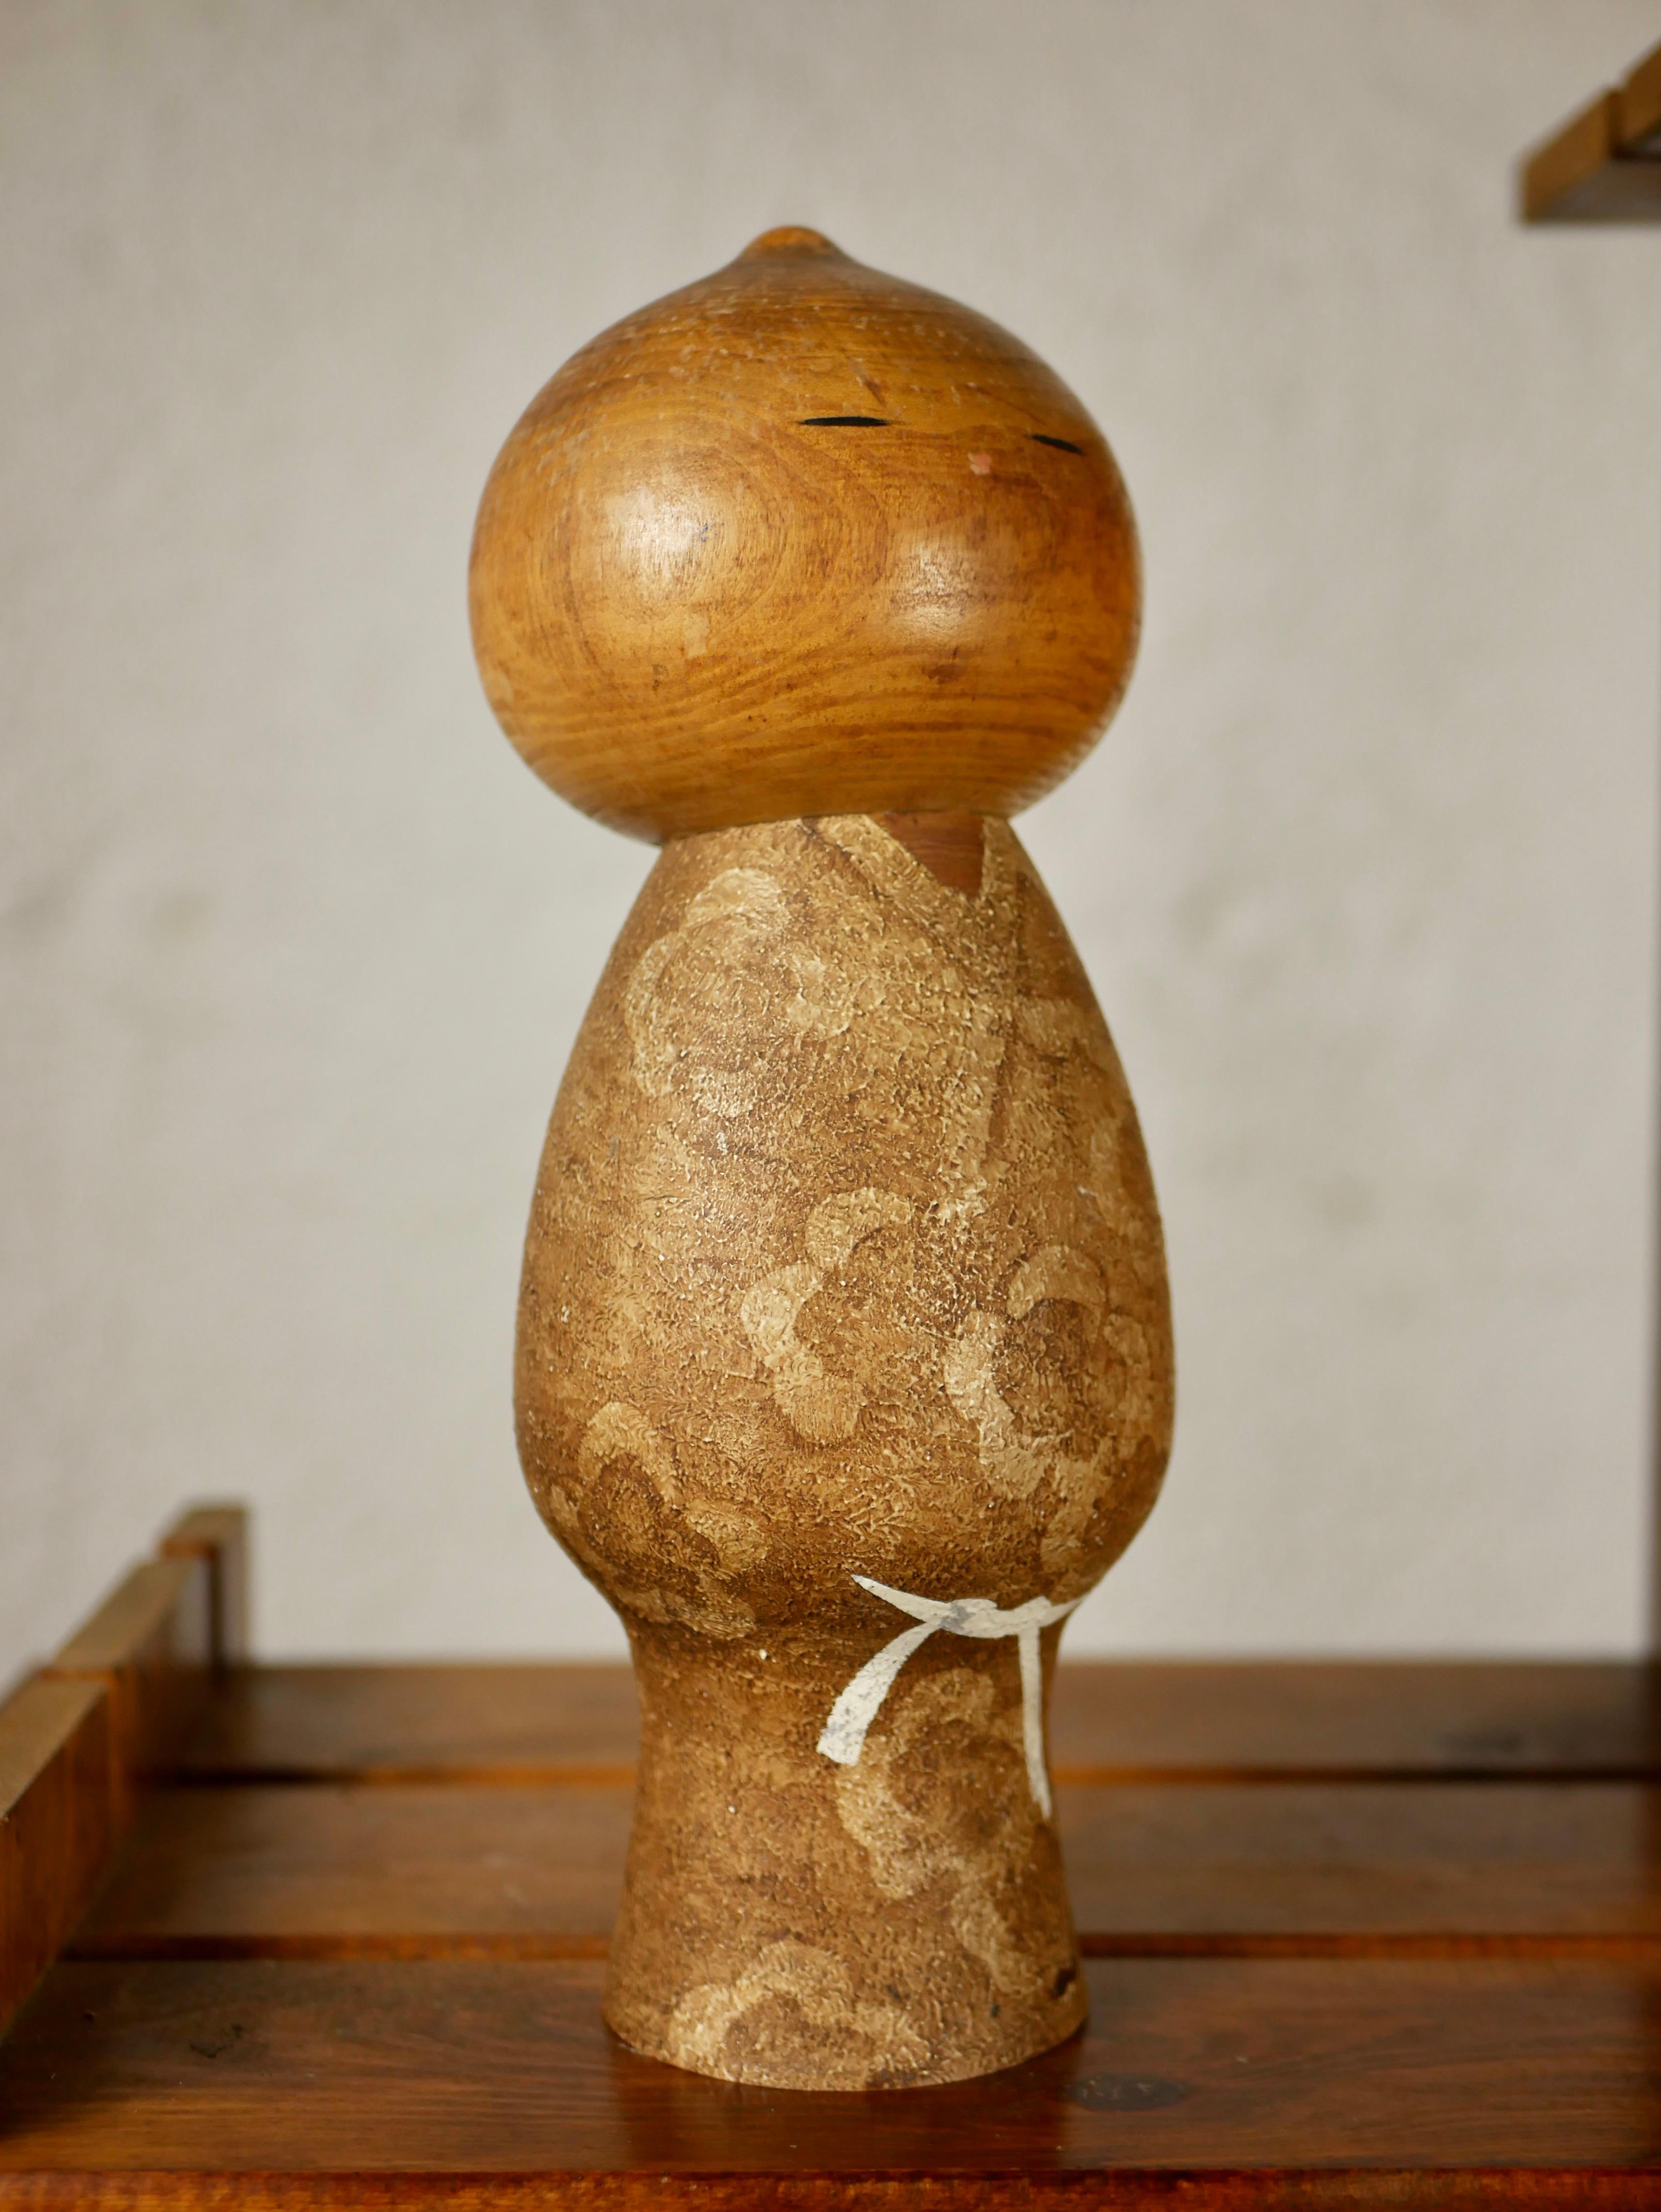 Adorable poupée Kokeshi Mushin (innocence), par Watanabe Masao (artisan sculpteur primé). L’une de ses créations les plus connues. 
Measures: H 29, 5 D 11. 
En bon état général, traces d'usure.

D’autres Kokeshi sont disponibles.

A l'instar